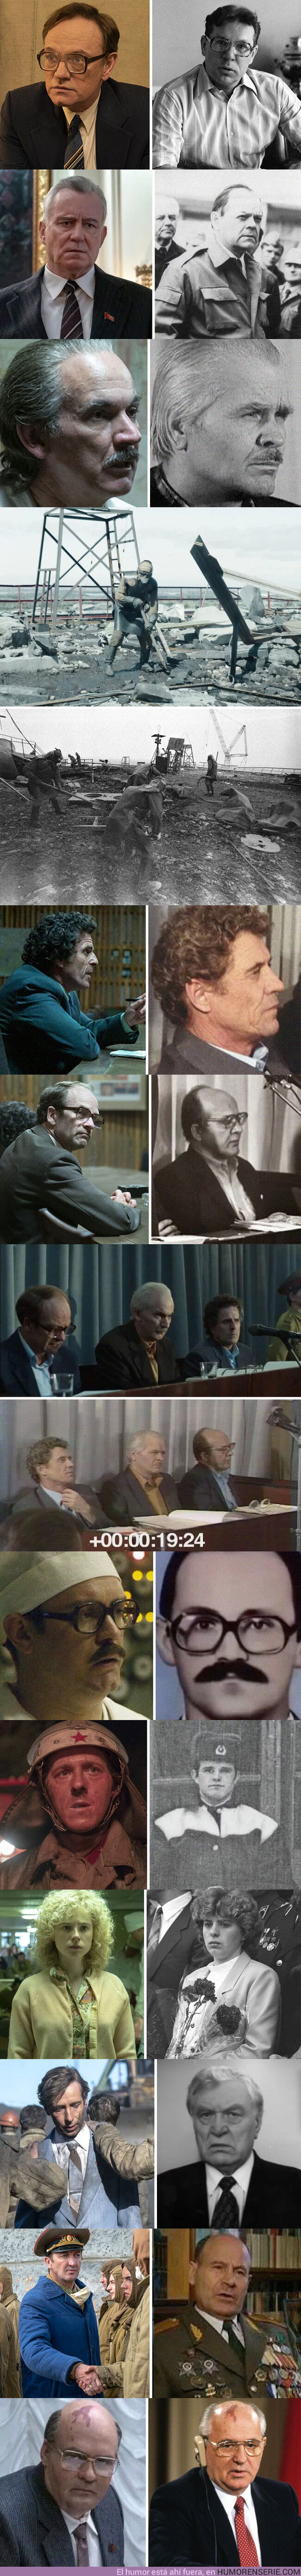 38920 - Esta galería compara los actores de la serie Chernobyl con los personajes reales de la tragedia